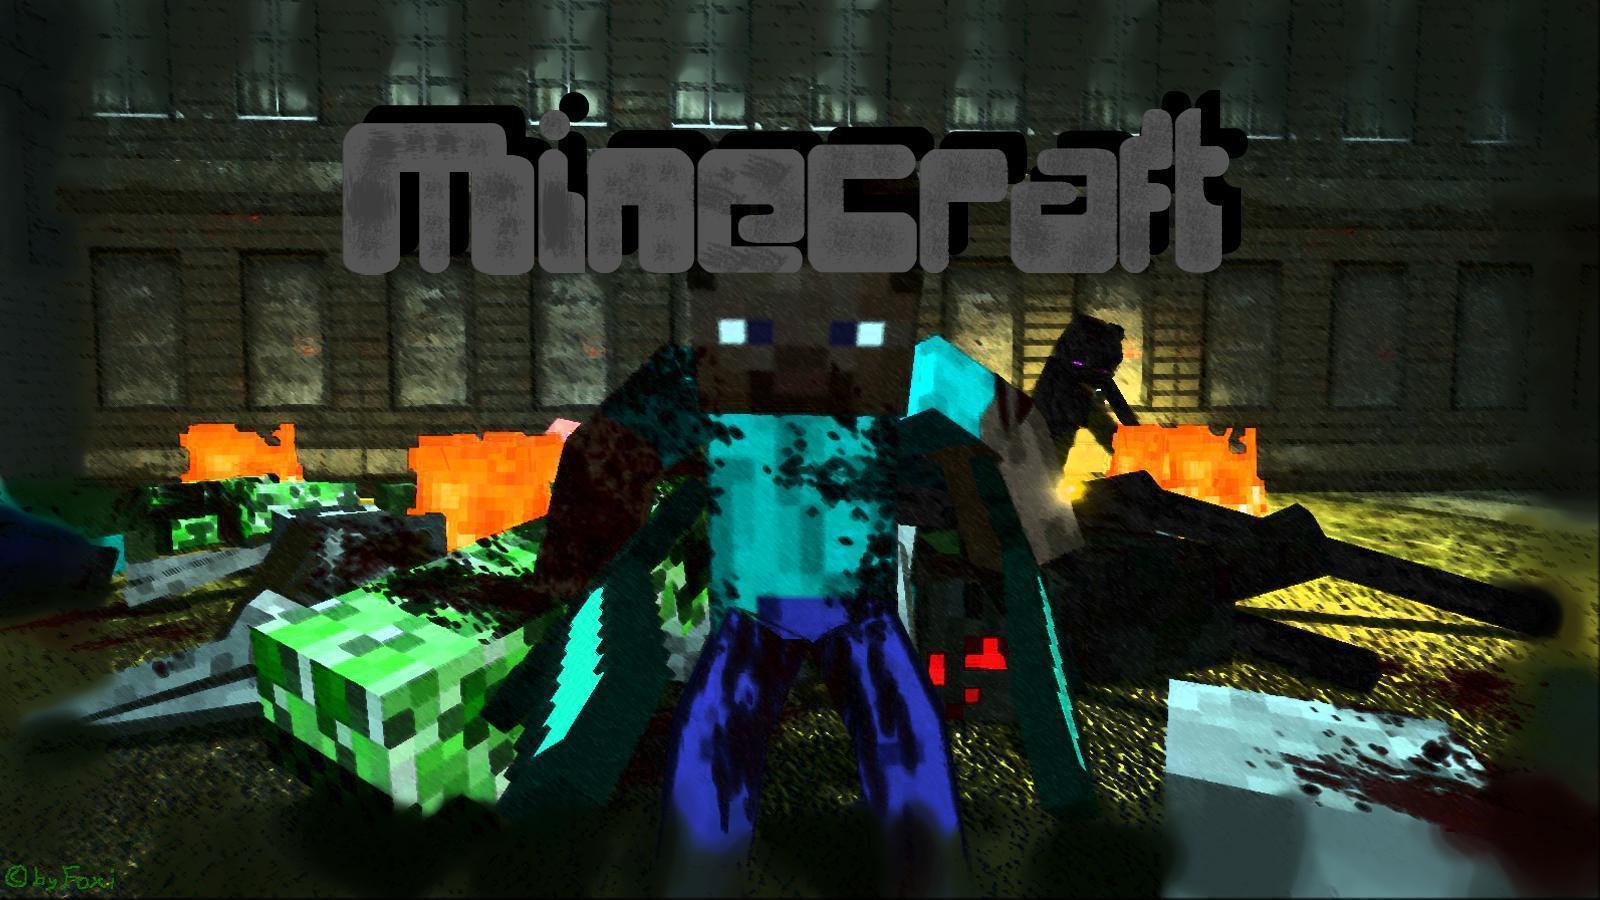 Cool Minecraft Background